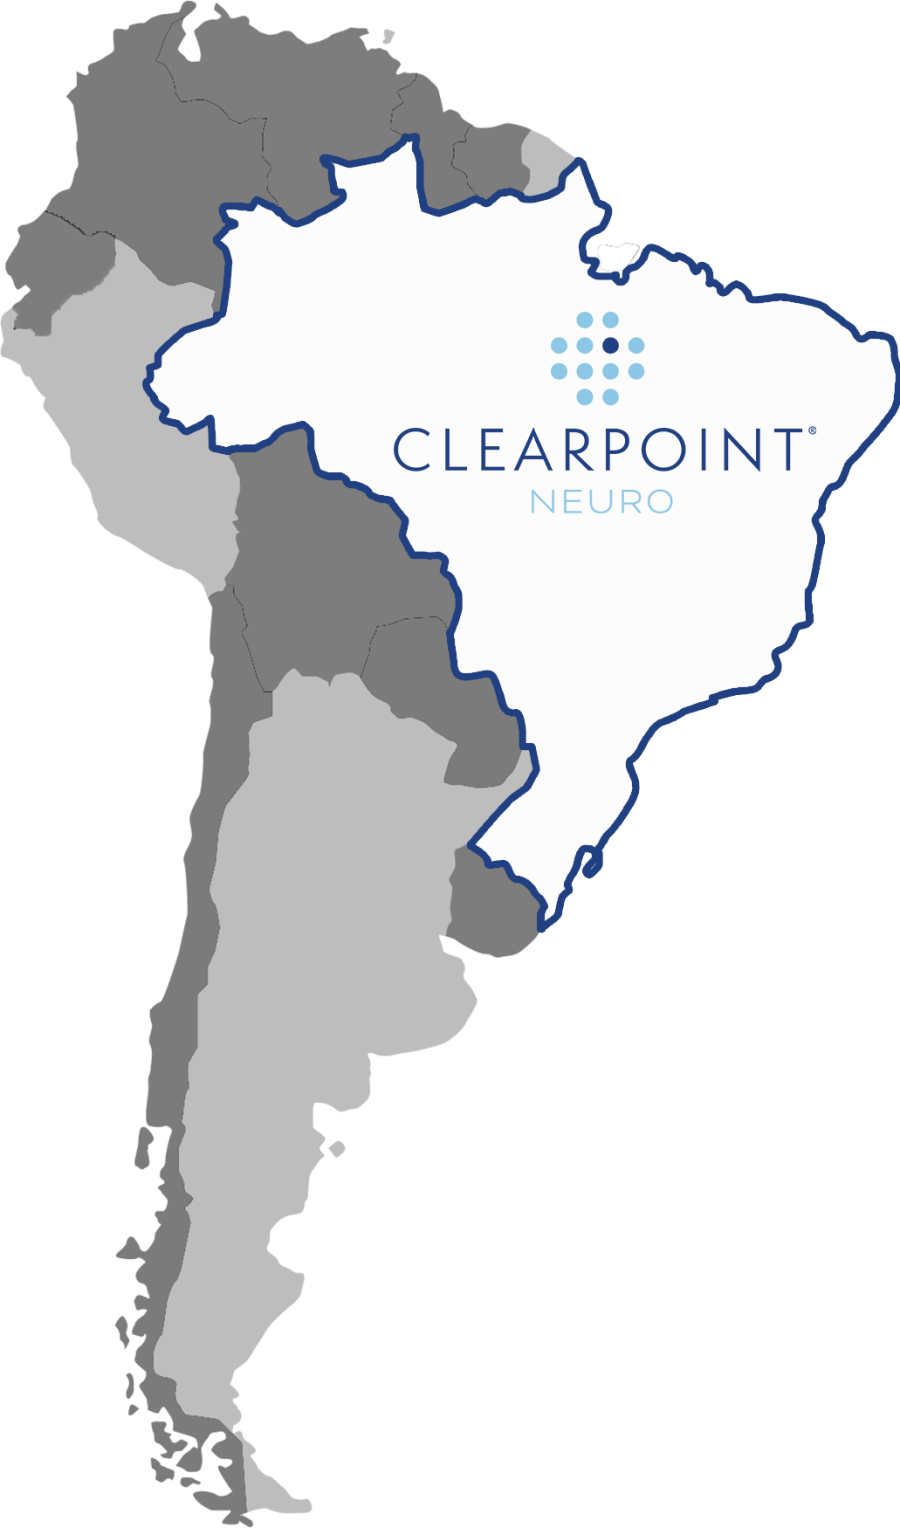 ClearPoint Neuro in Brazil